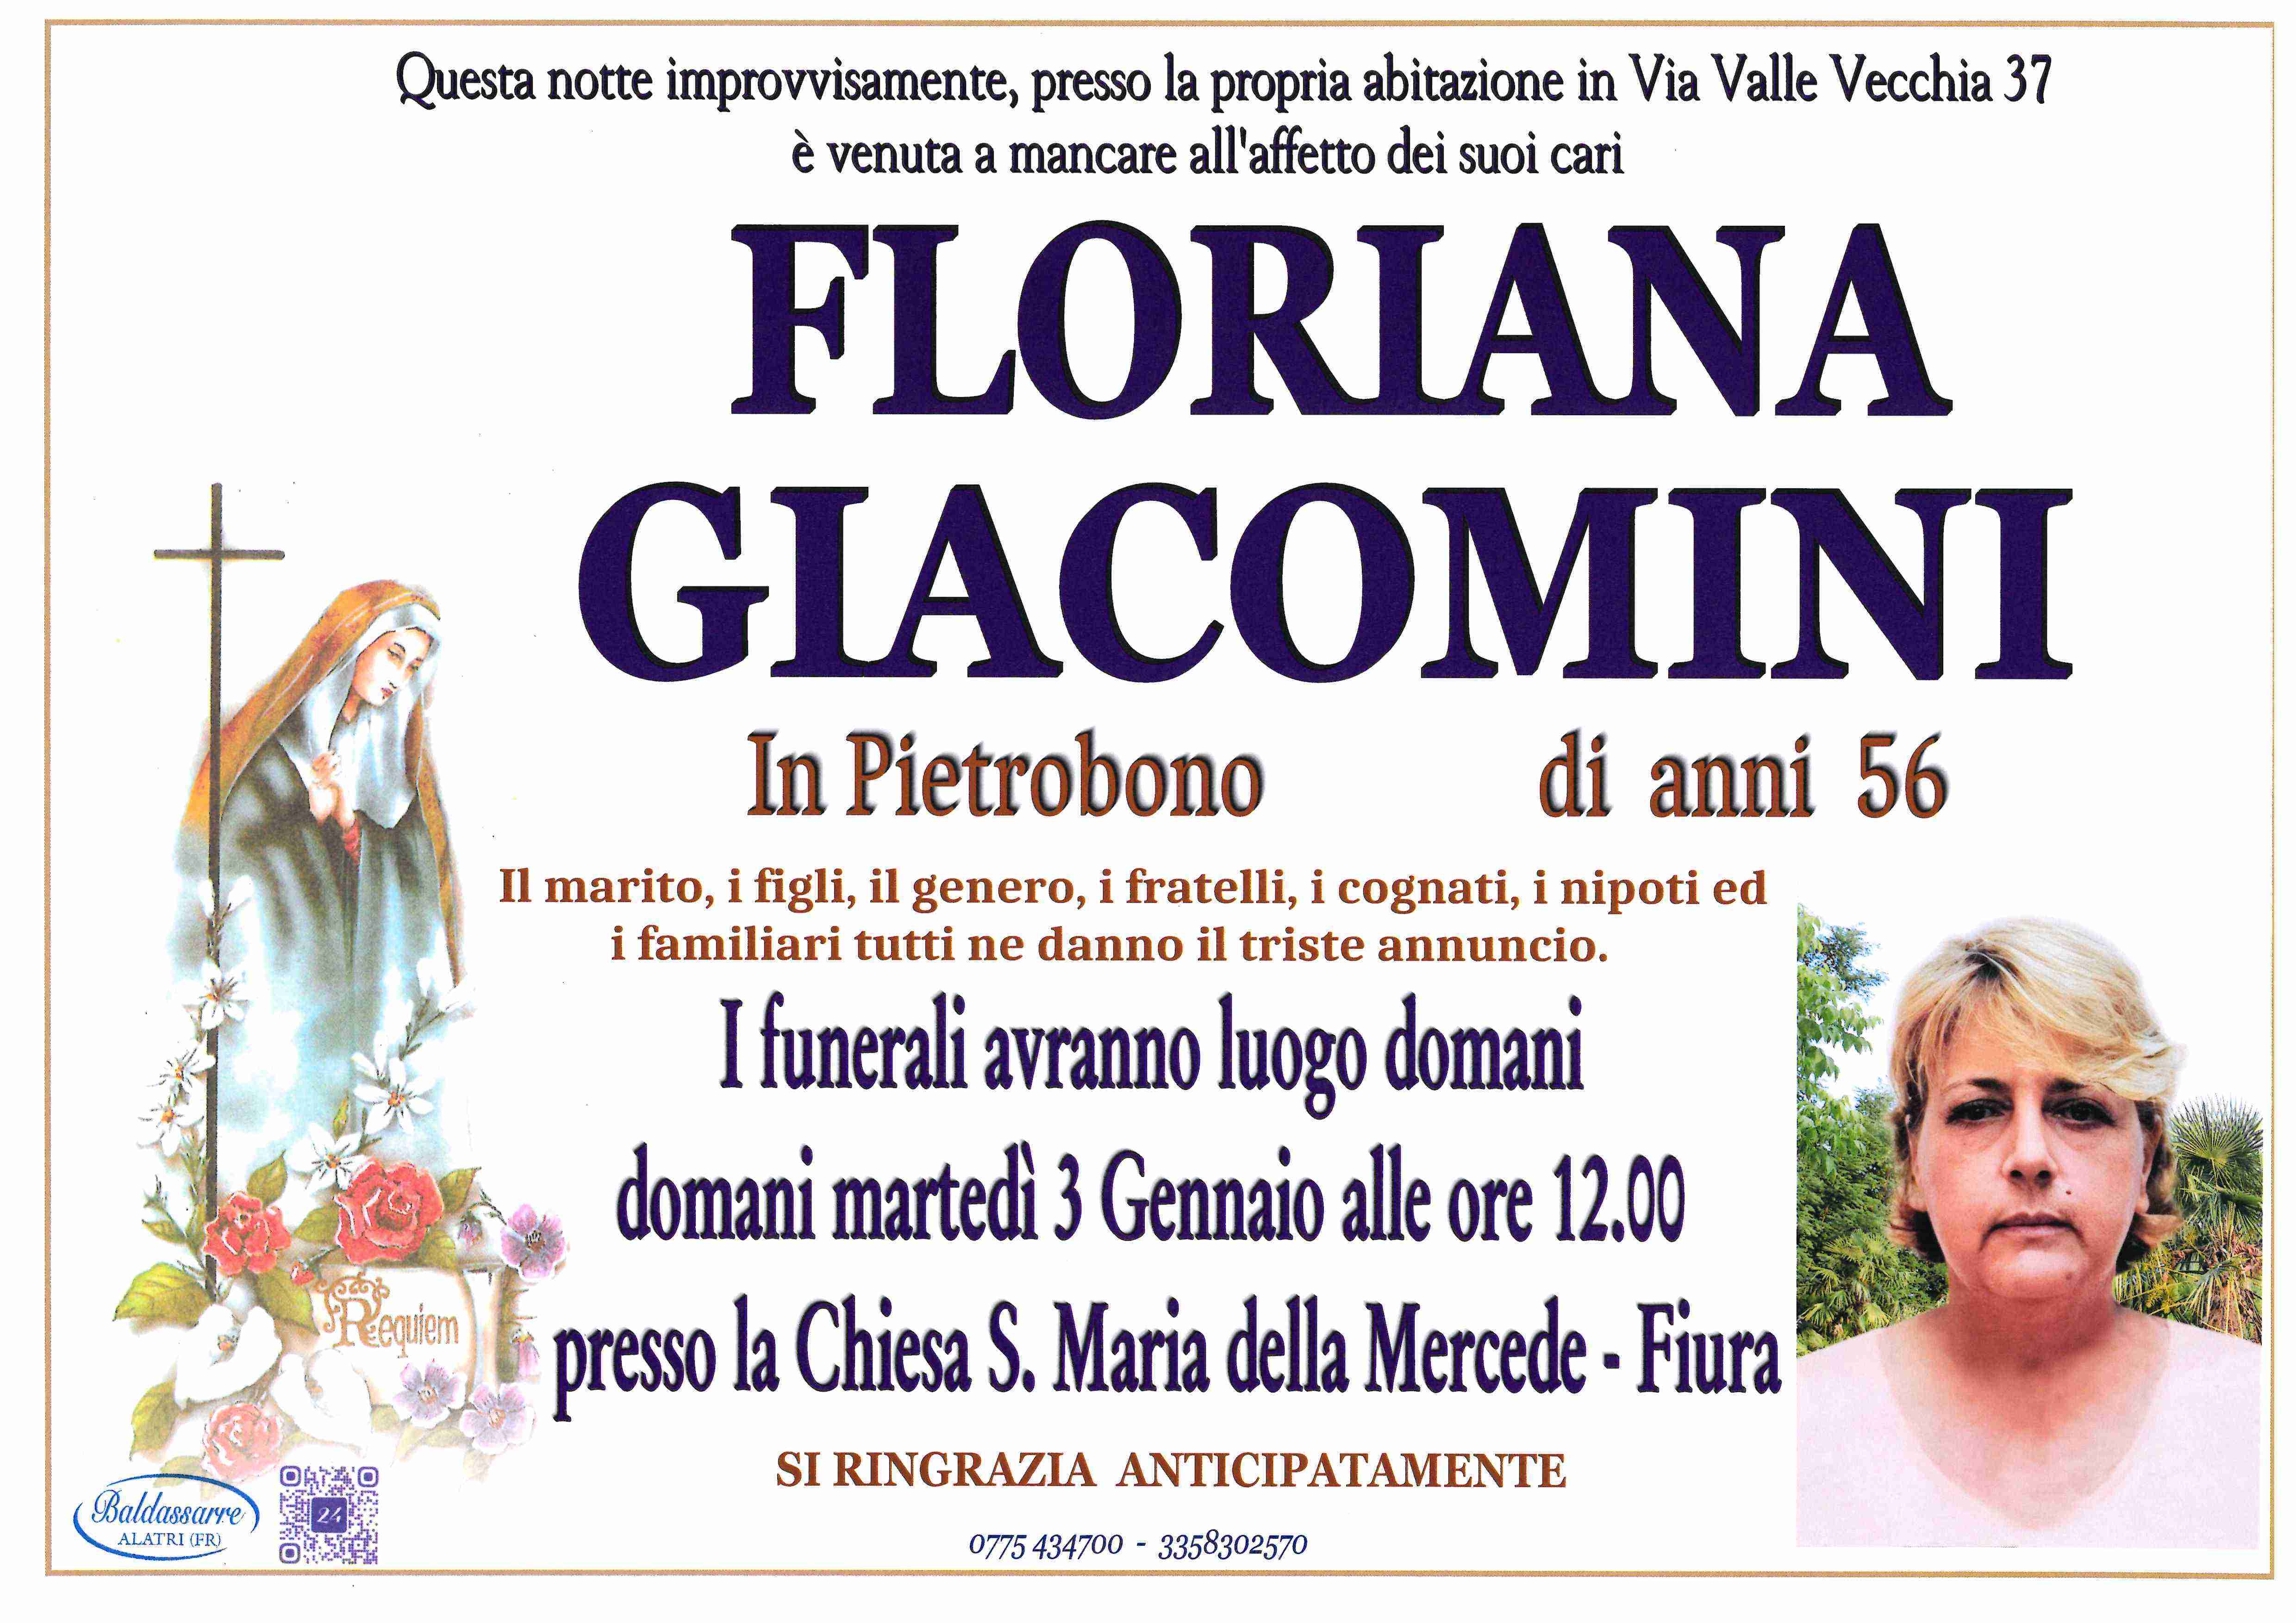 Giacomini floriana